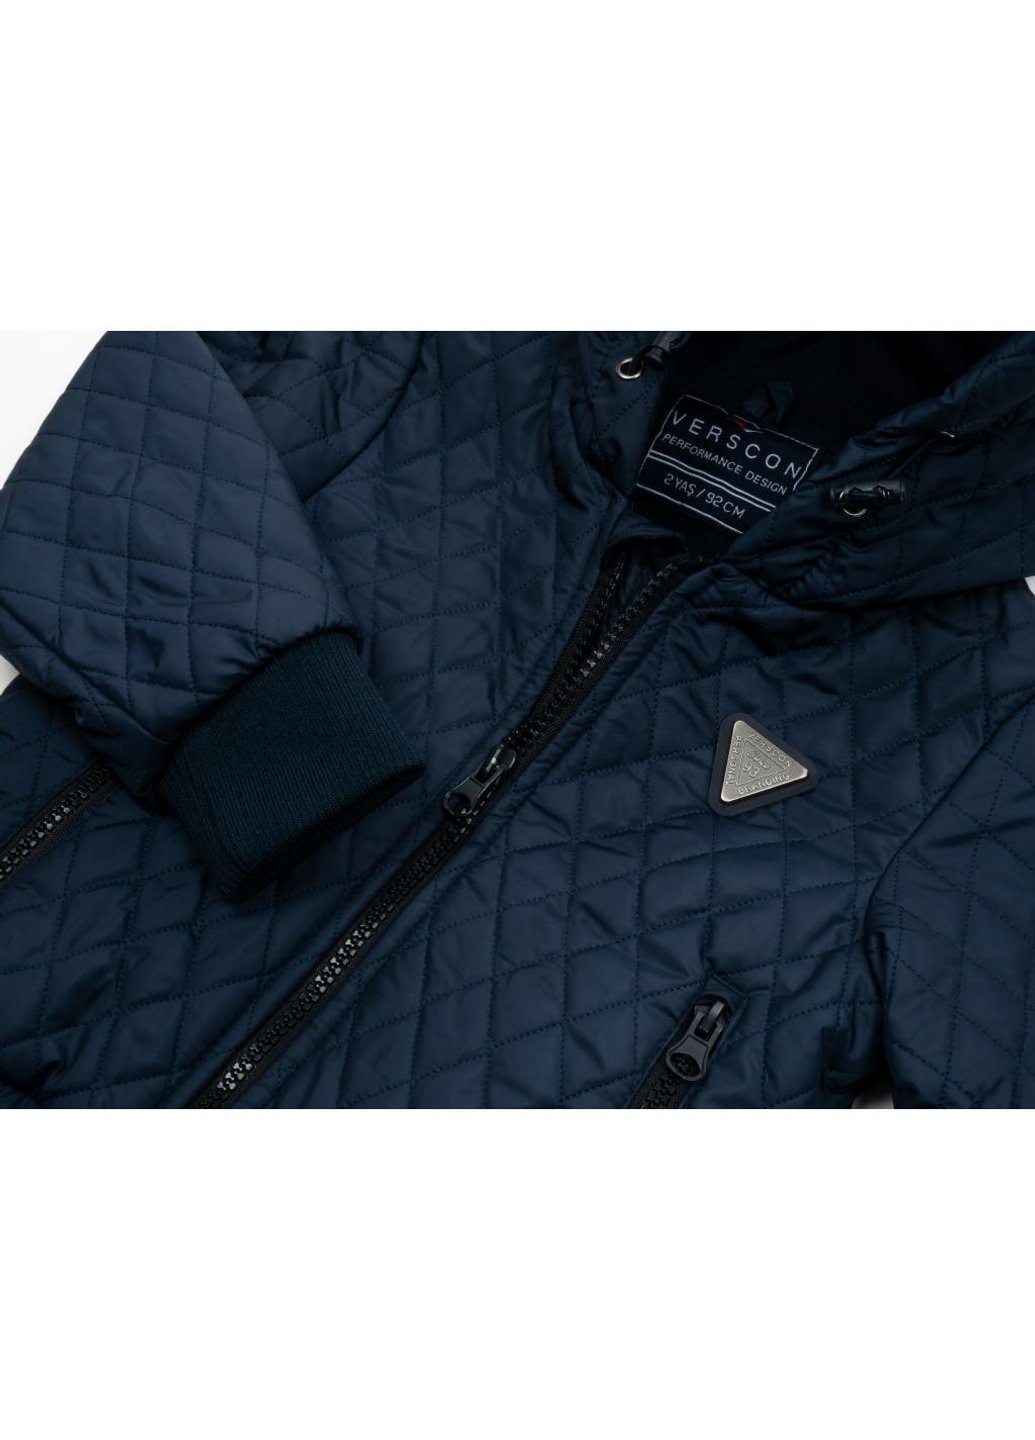 Голубая демисезонная куртка стеганая (3439-92b-blue) Verscon